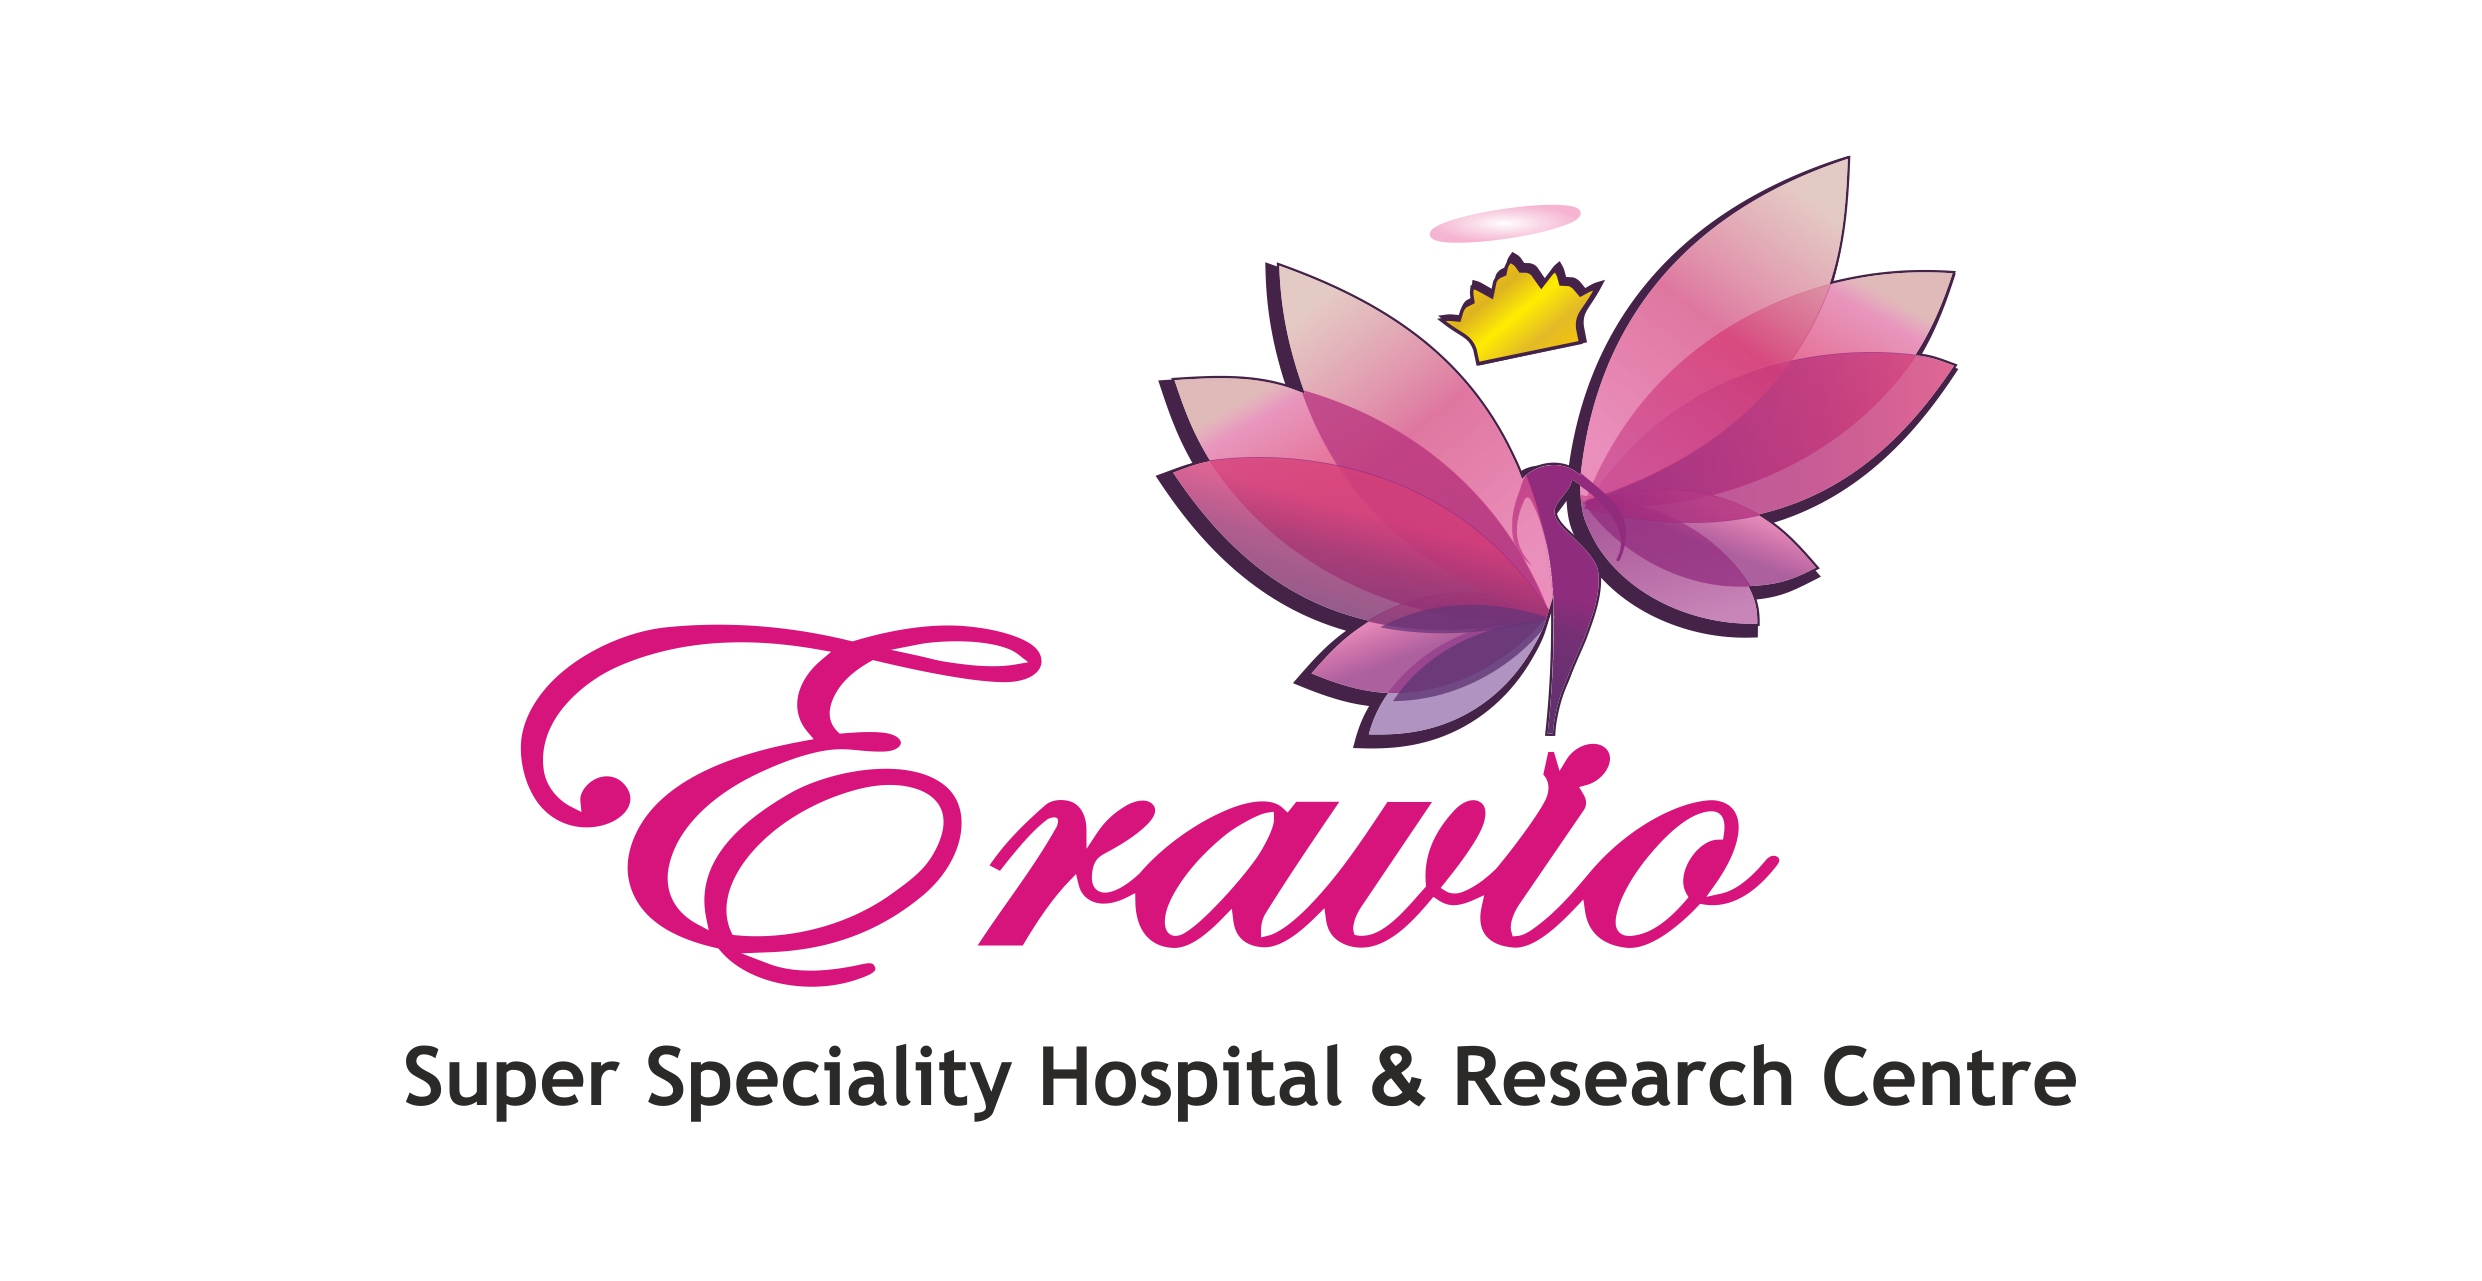 Eravio Hospital